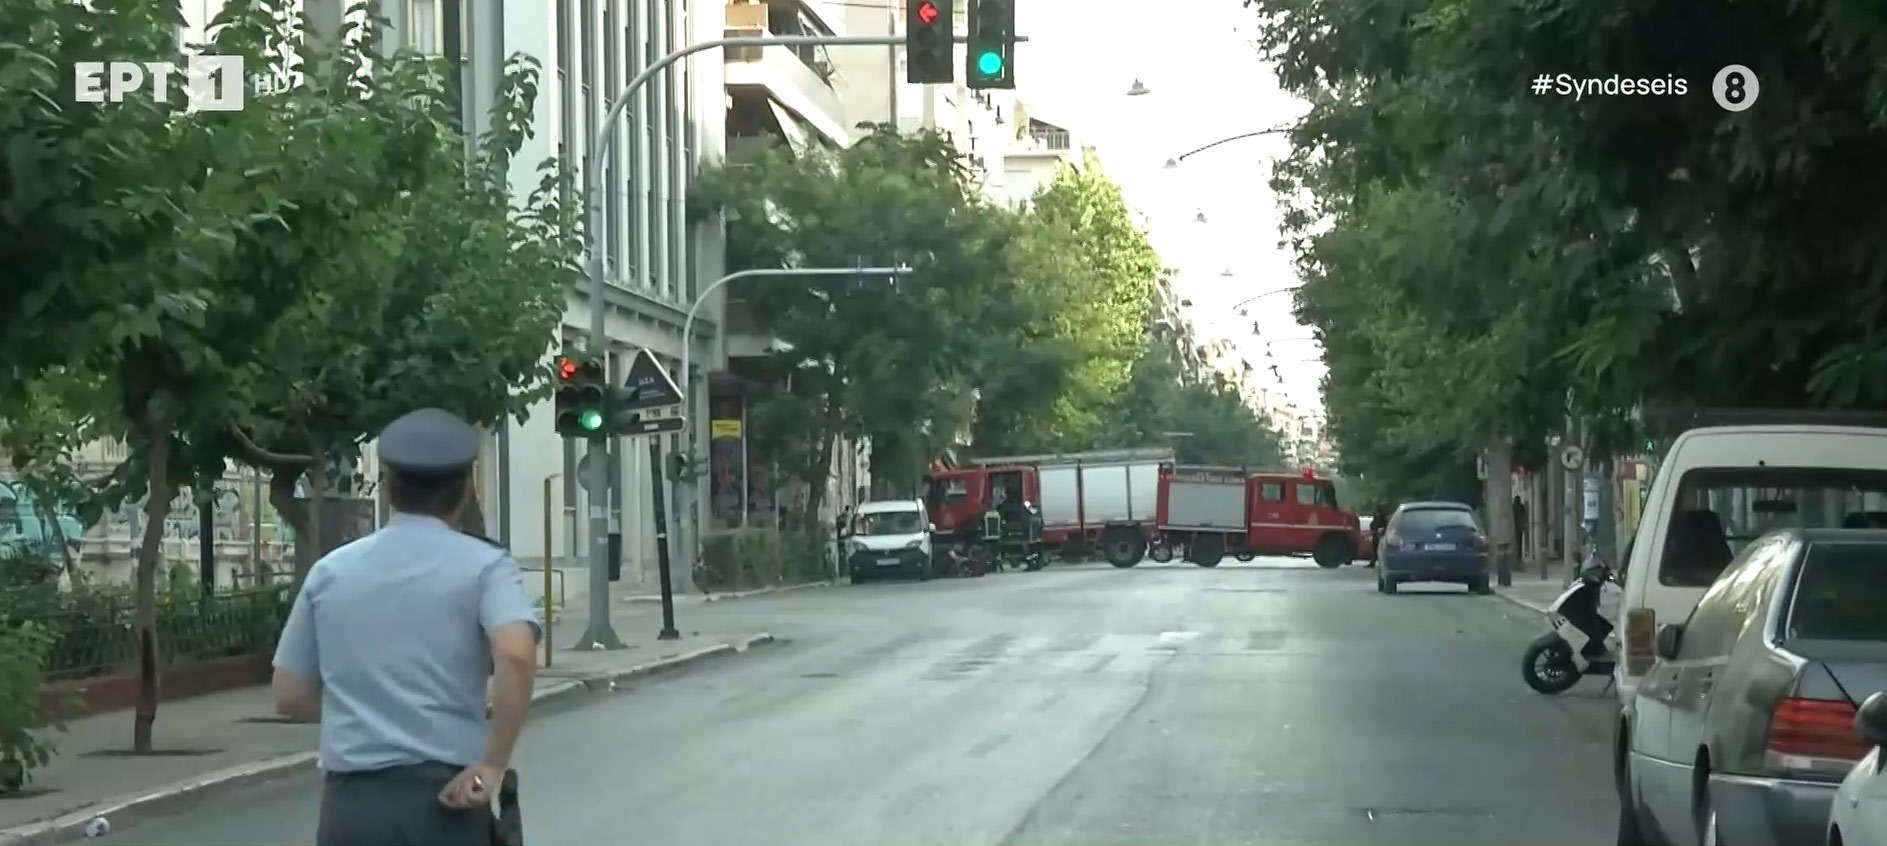 Ελεγχόμενη έκρηξη σε κτίριο στην Αχαρνών, συναγερμός και για δεύτερο ύποπτο πακέτο – Κλειστοί οι γύρω δρομοι